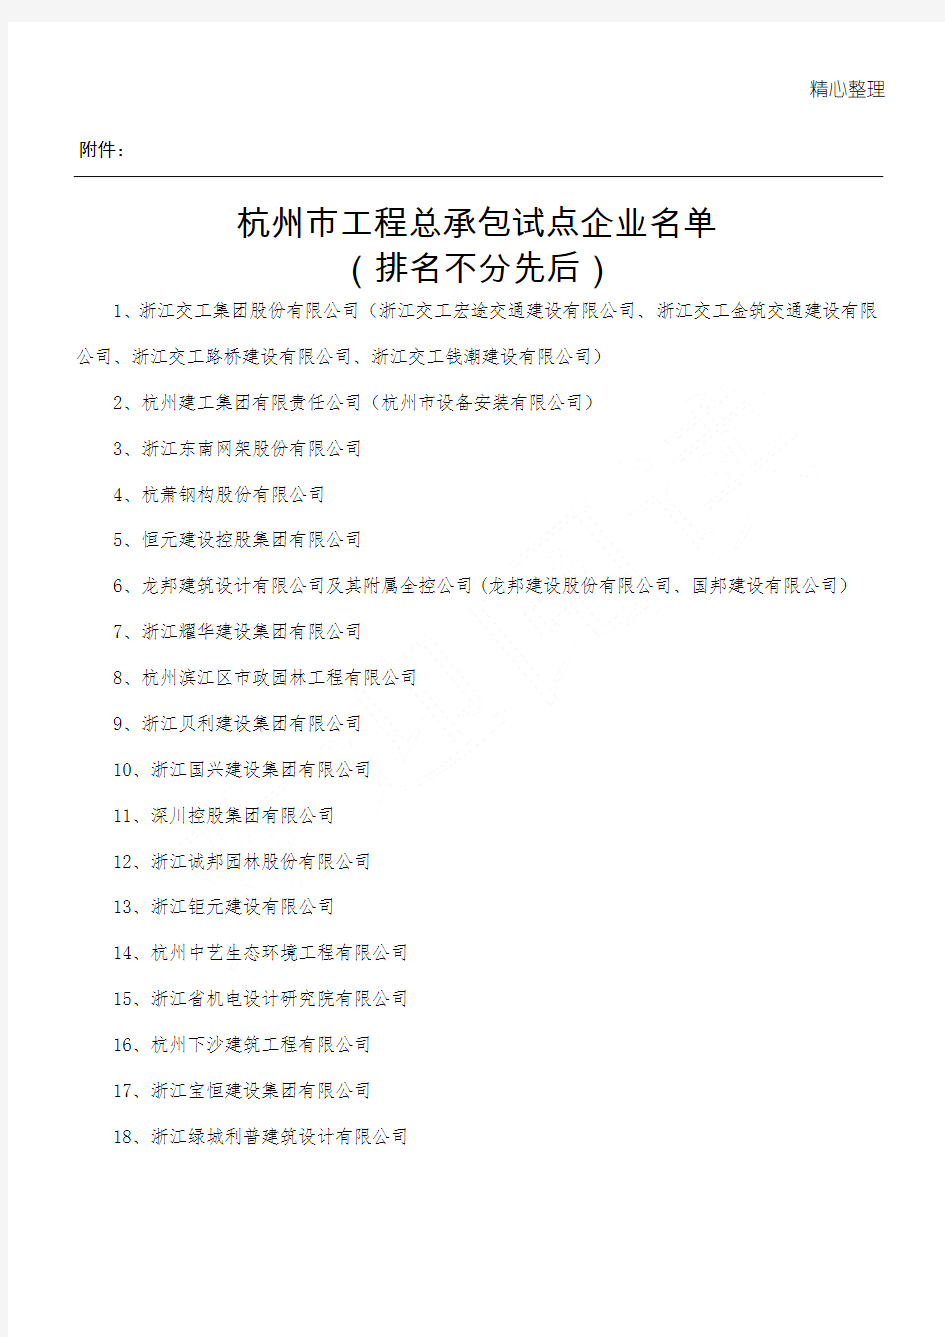 杭州市工程总承包试点企业名单